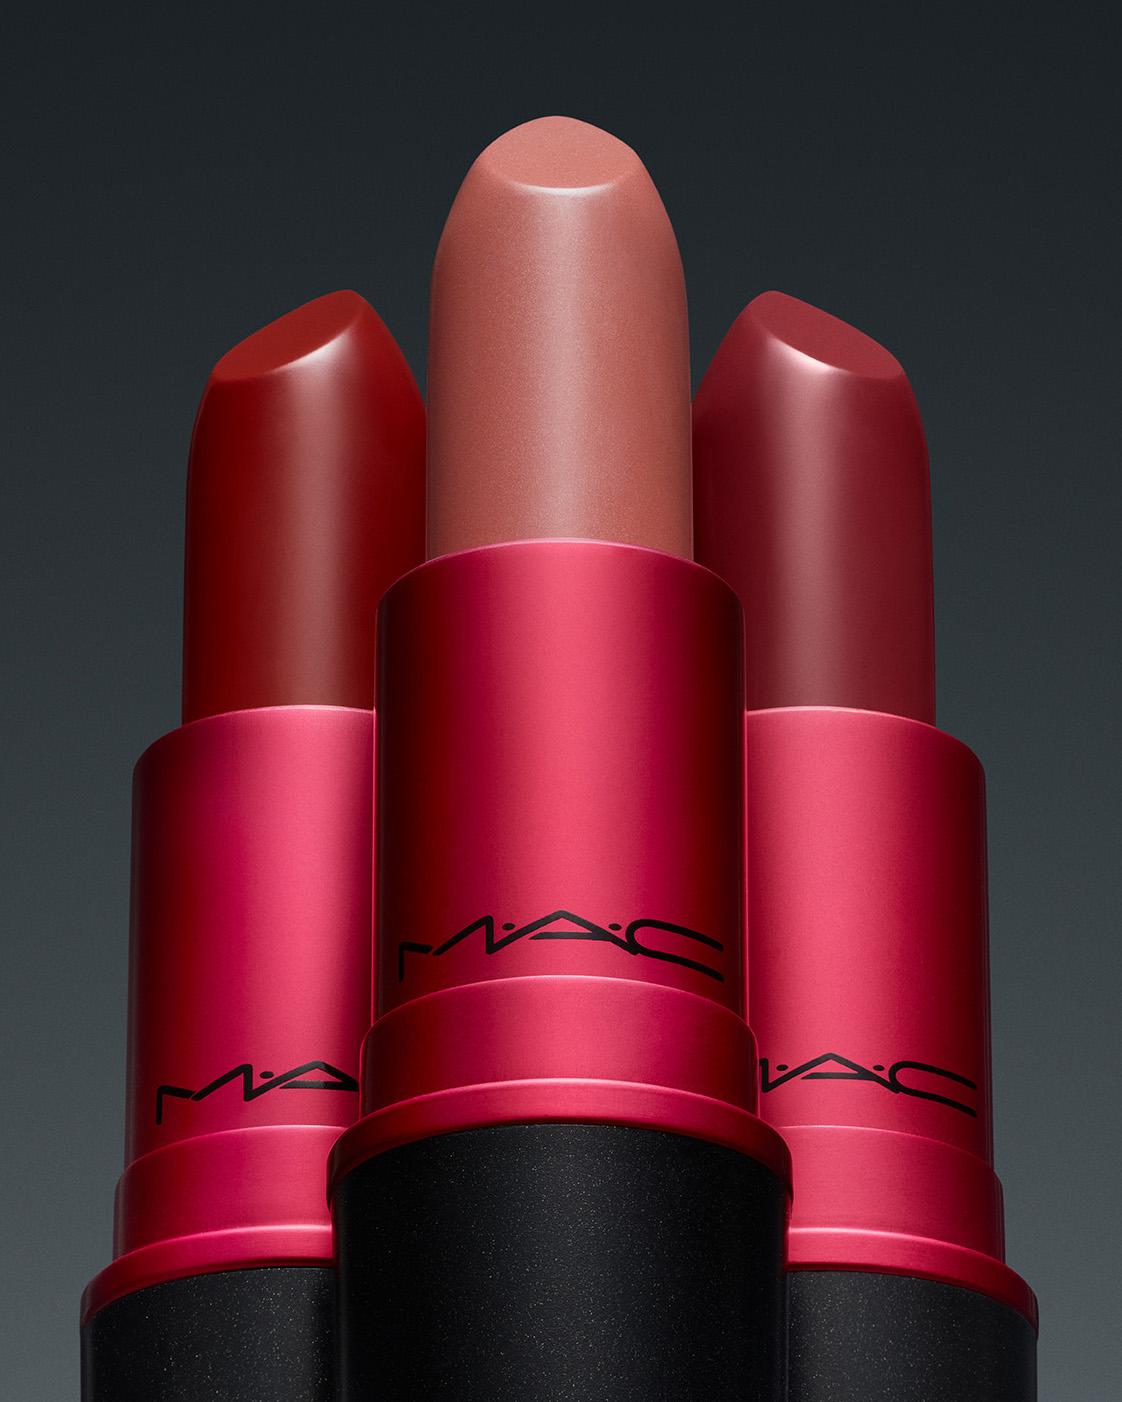 3 lipsticks